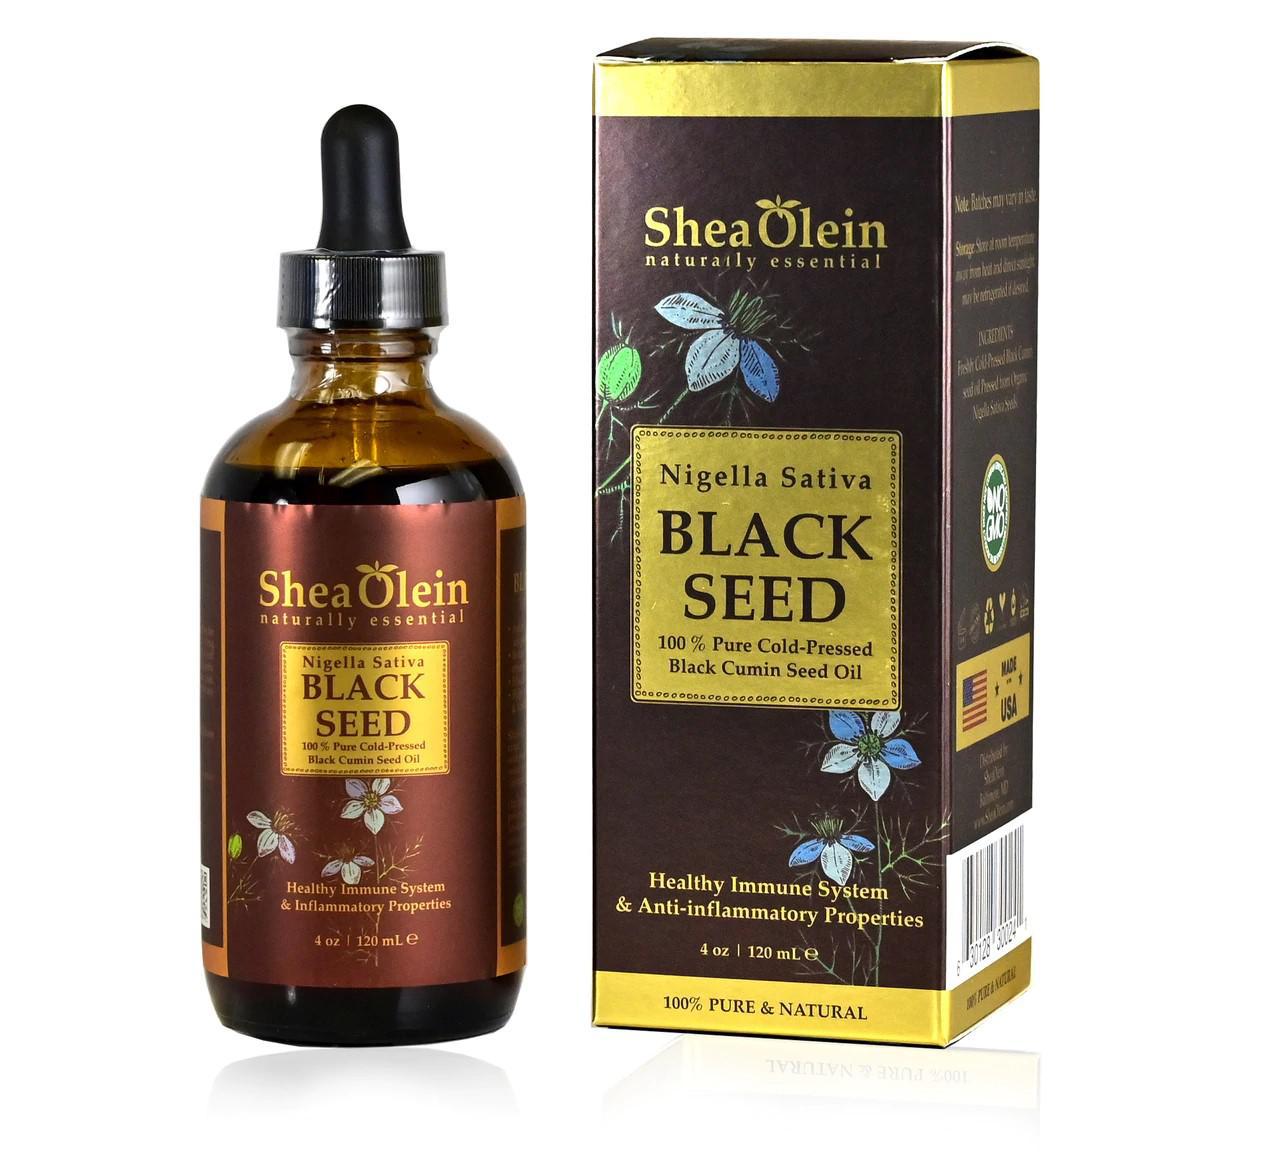 Black Seed Oil 1oz (Shea Olein)